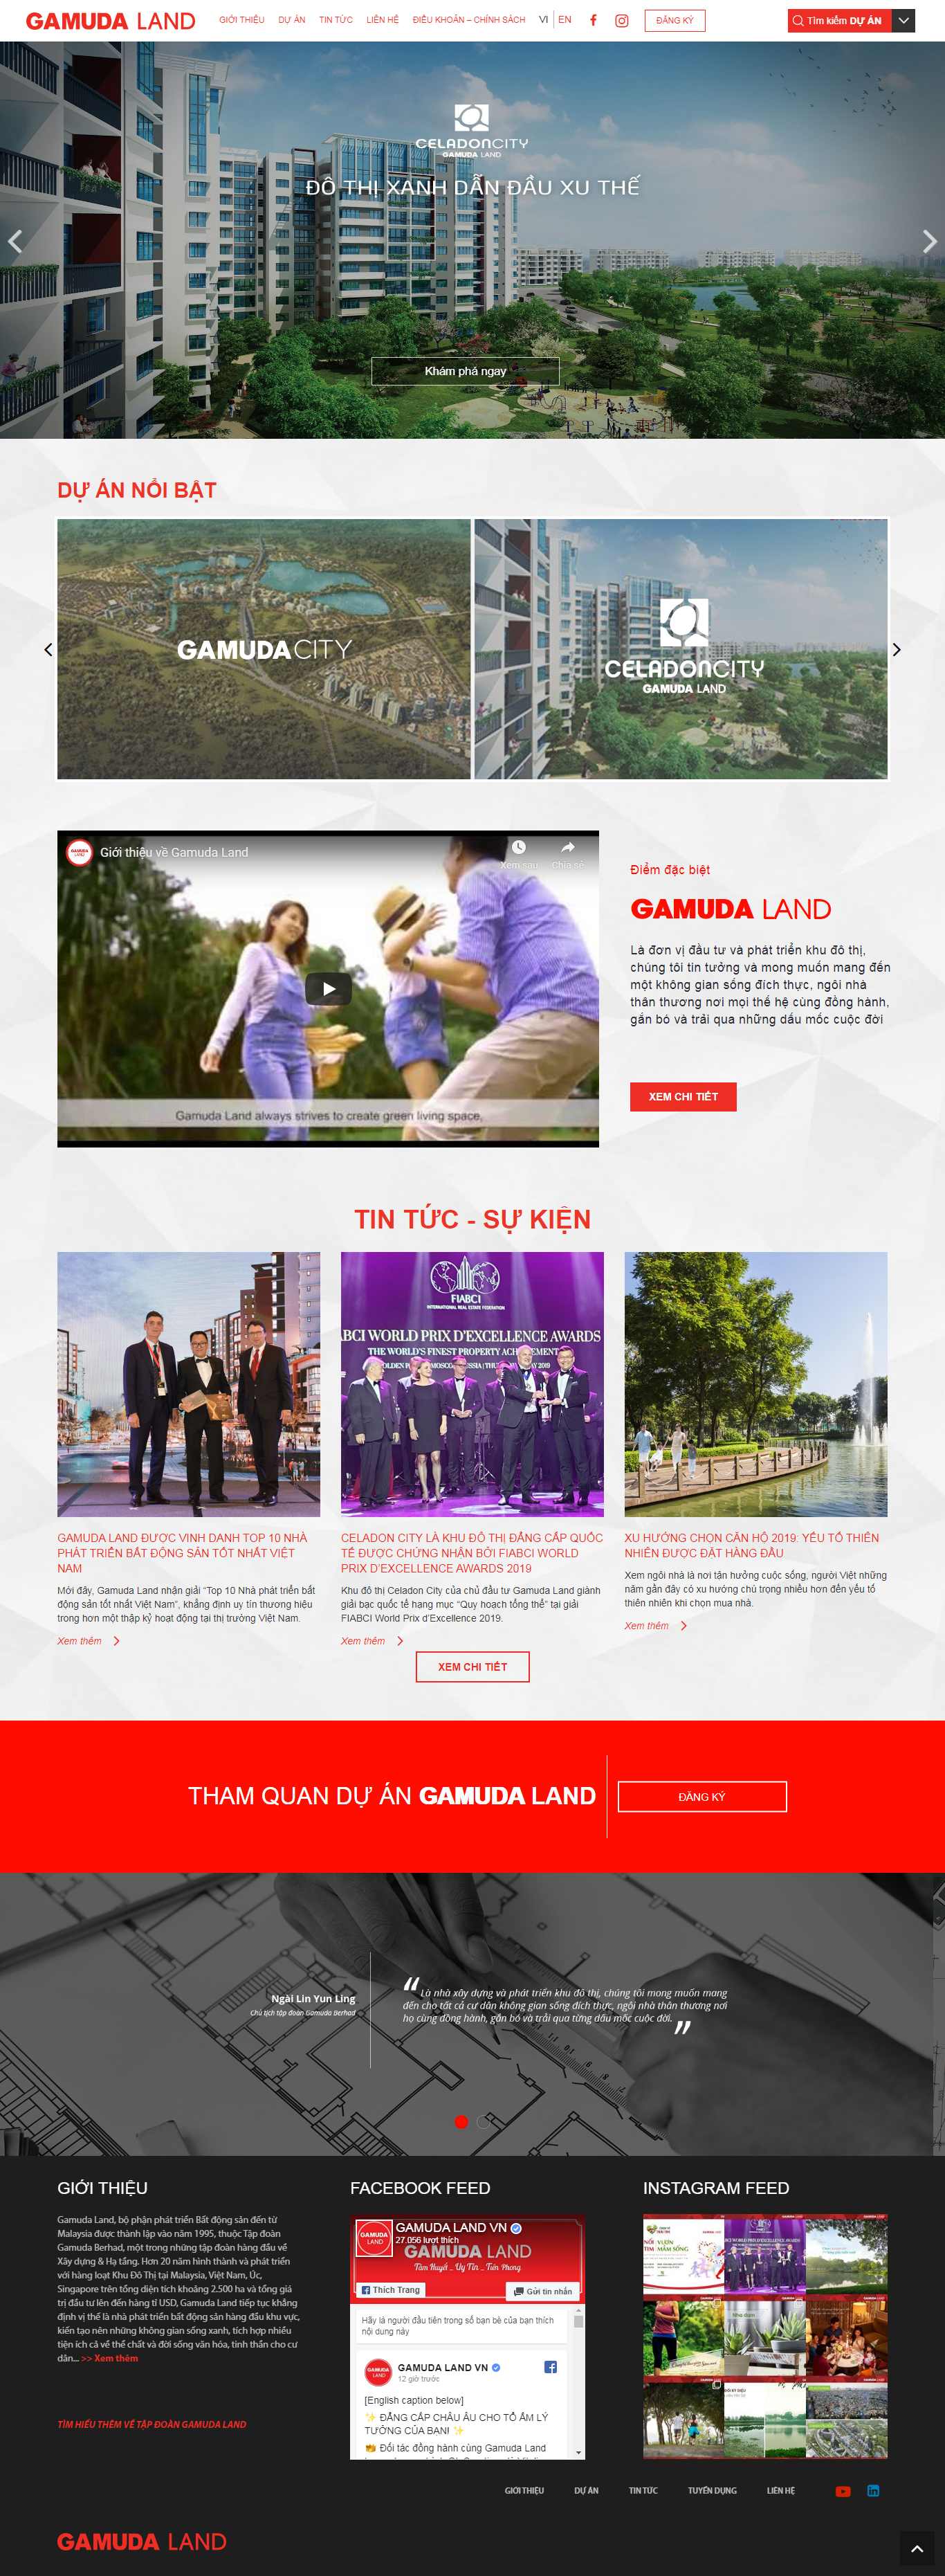 Thiết kế Website dự án bất động sản - gamudaland.com.vn